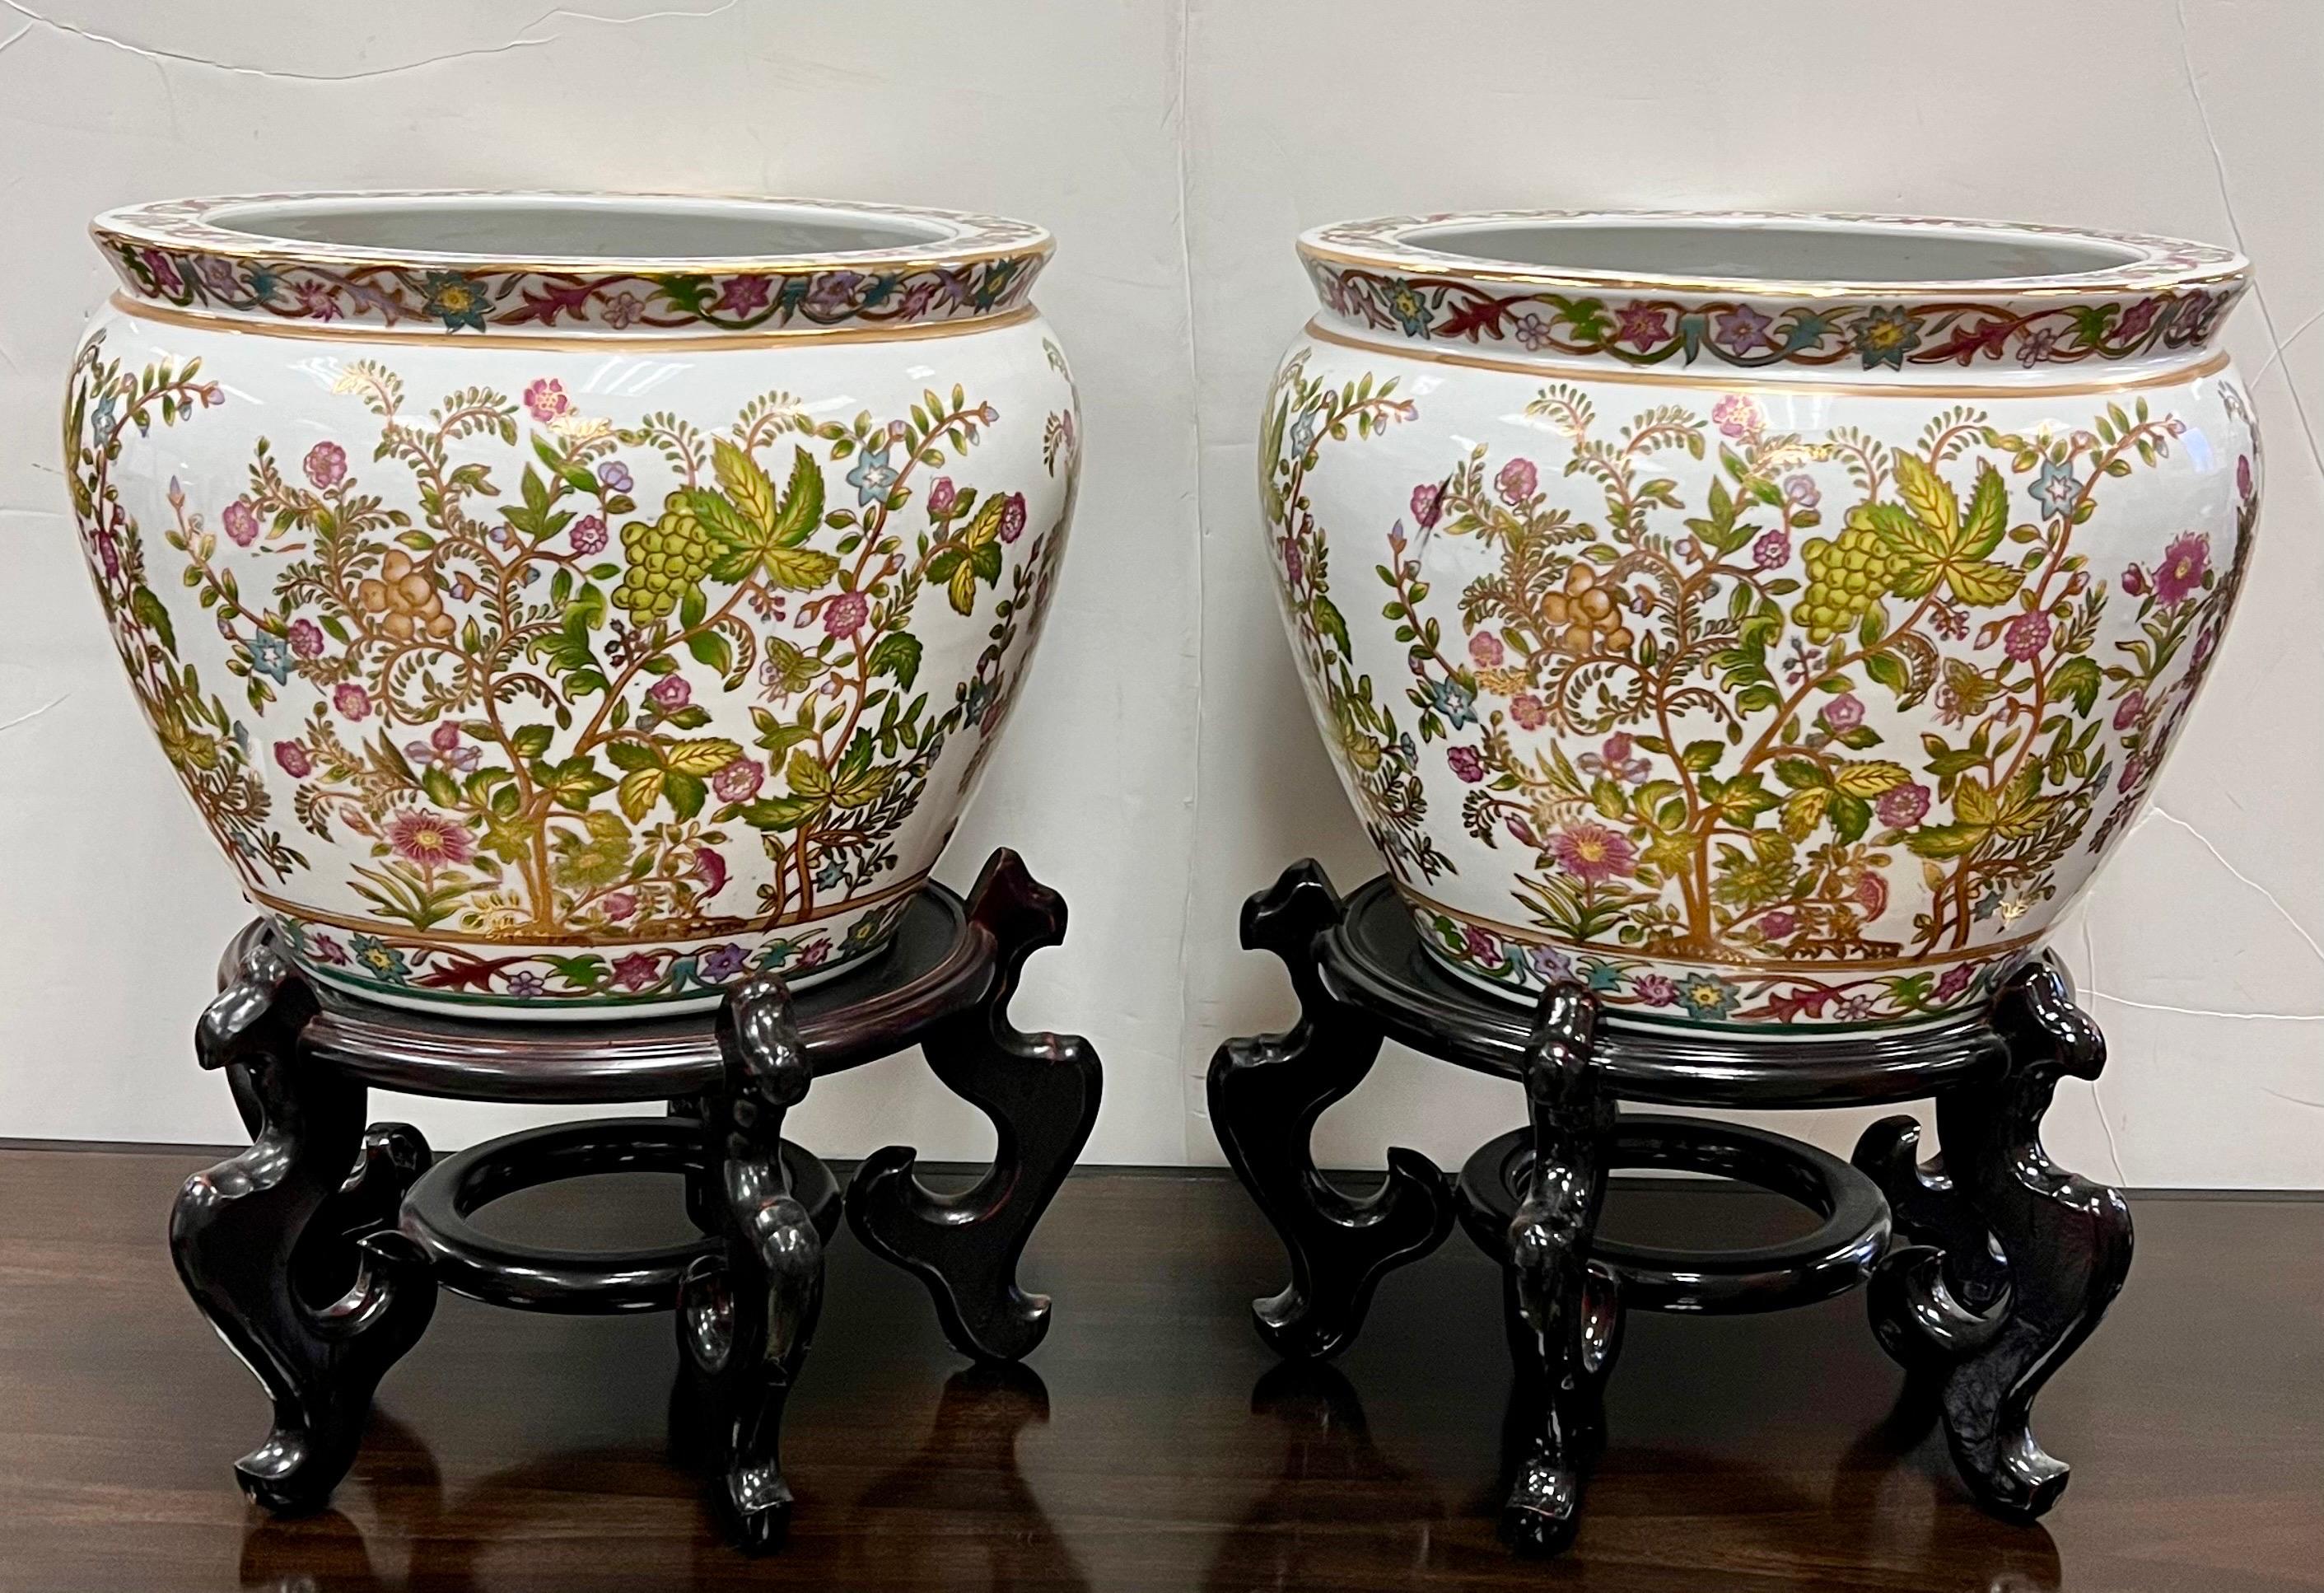 Prächtiges Paar chinesische Porzellan Jardinieres Fischschalen Pflanzgefäße in einem rosa und grünen Blumenmotiv.  Auf geschnitzten Holzsockeln.